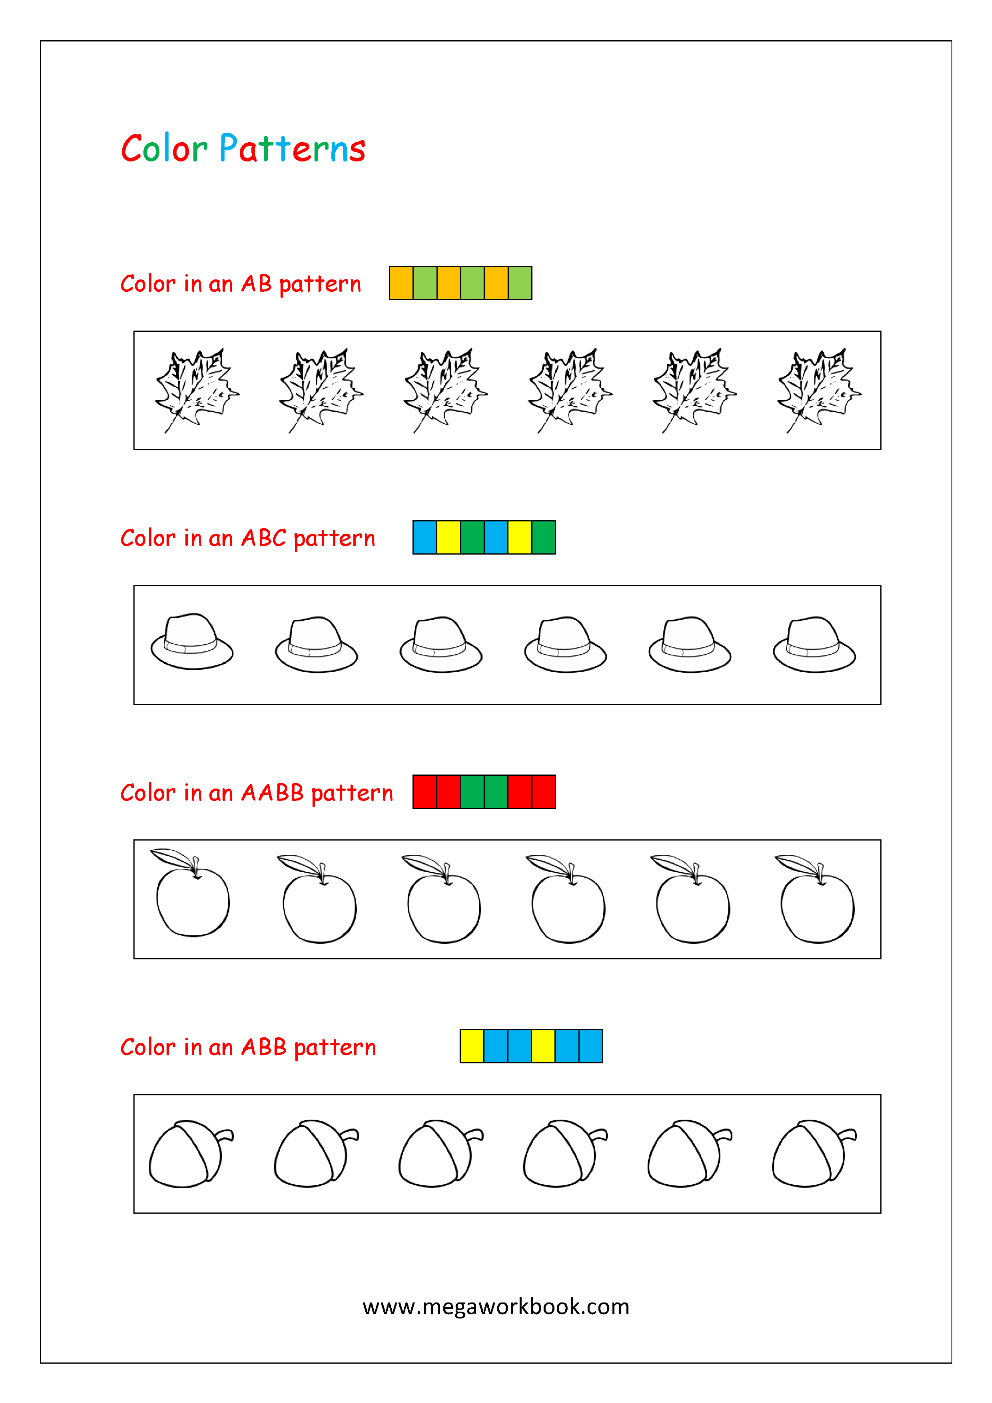 Pattern Worksheets For Kindergarten - Color Patterns - Growing For Patterns Worksheet For Kindergarten